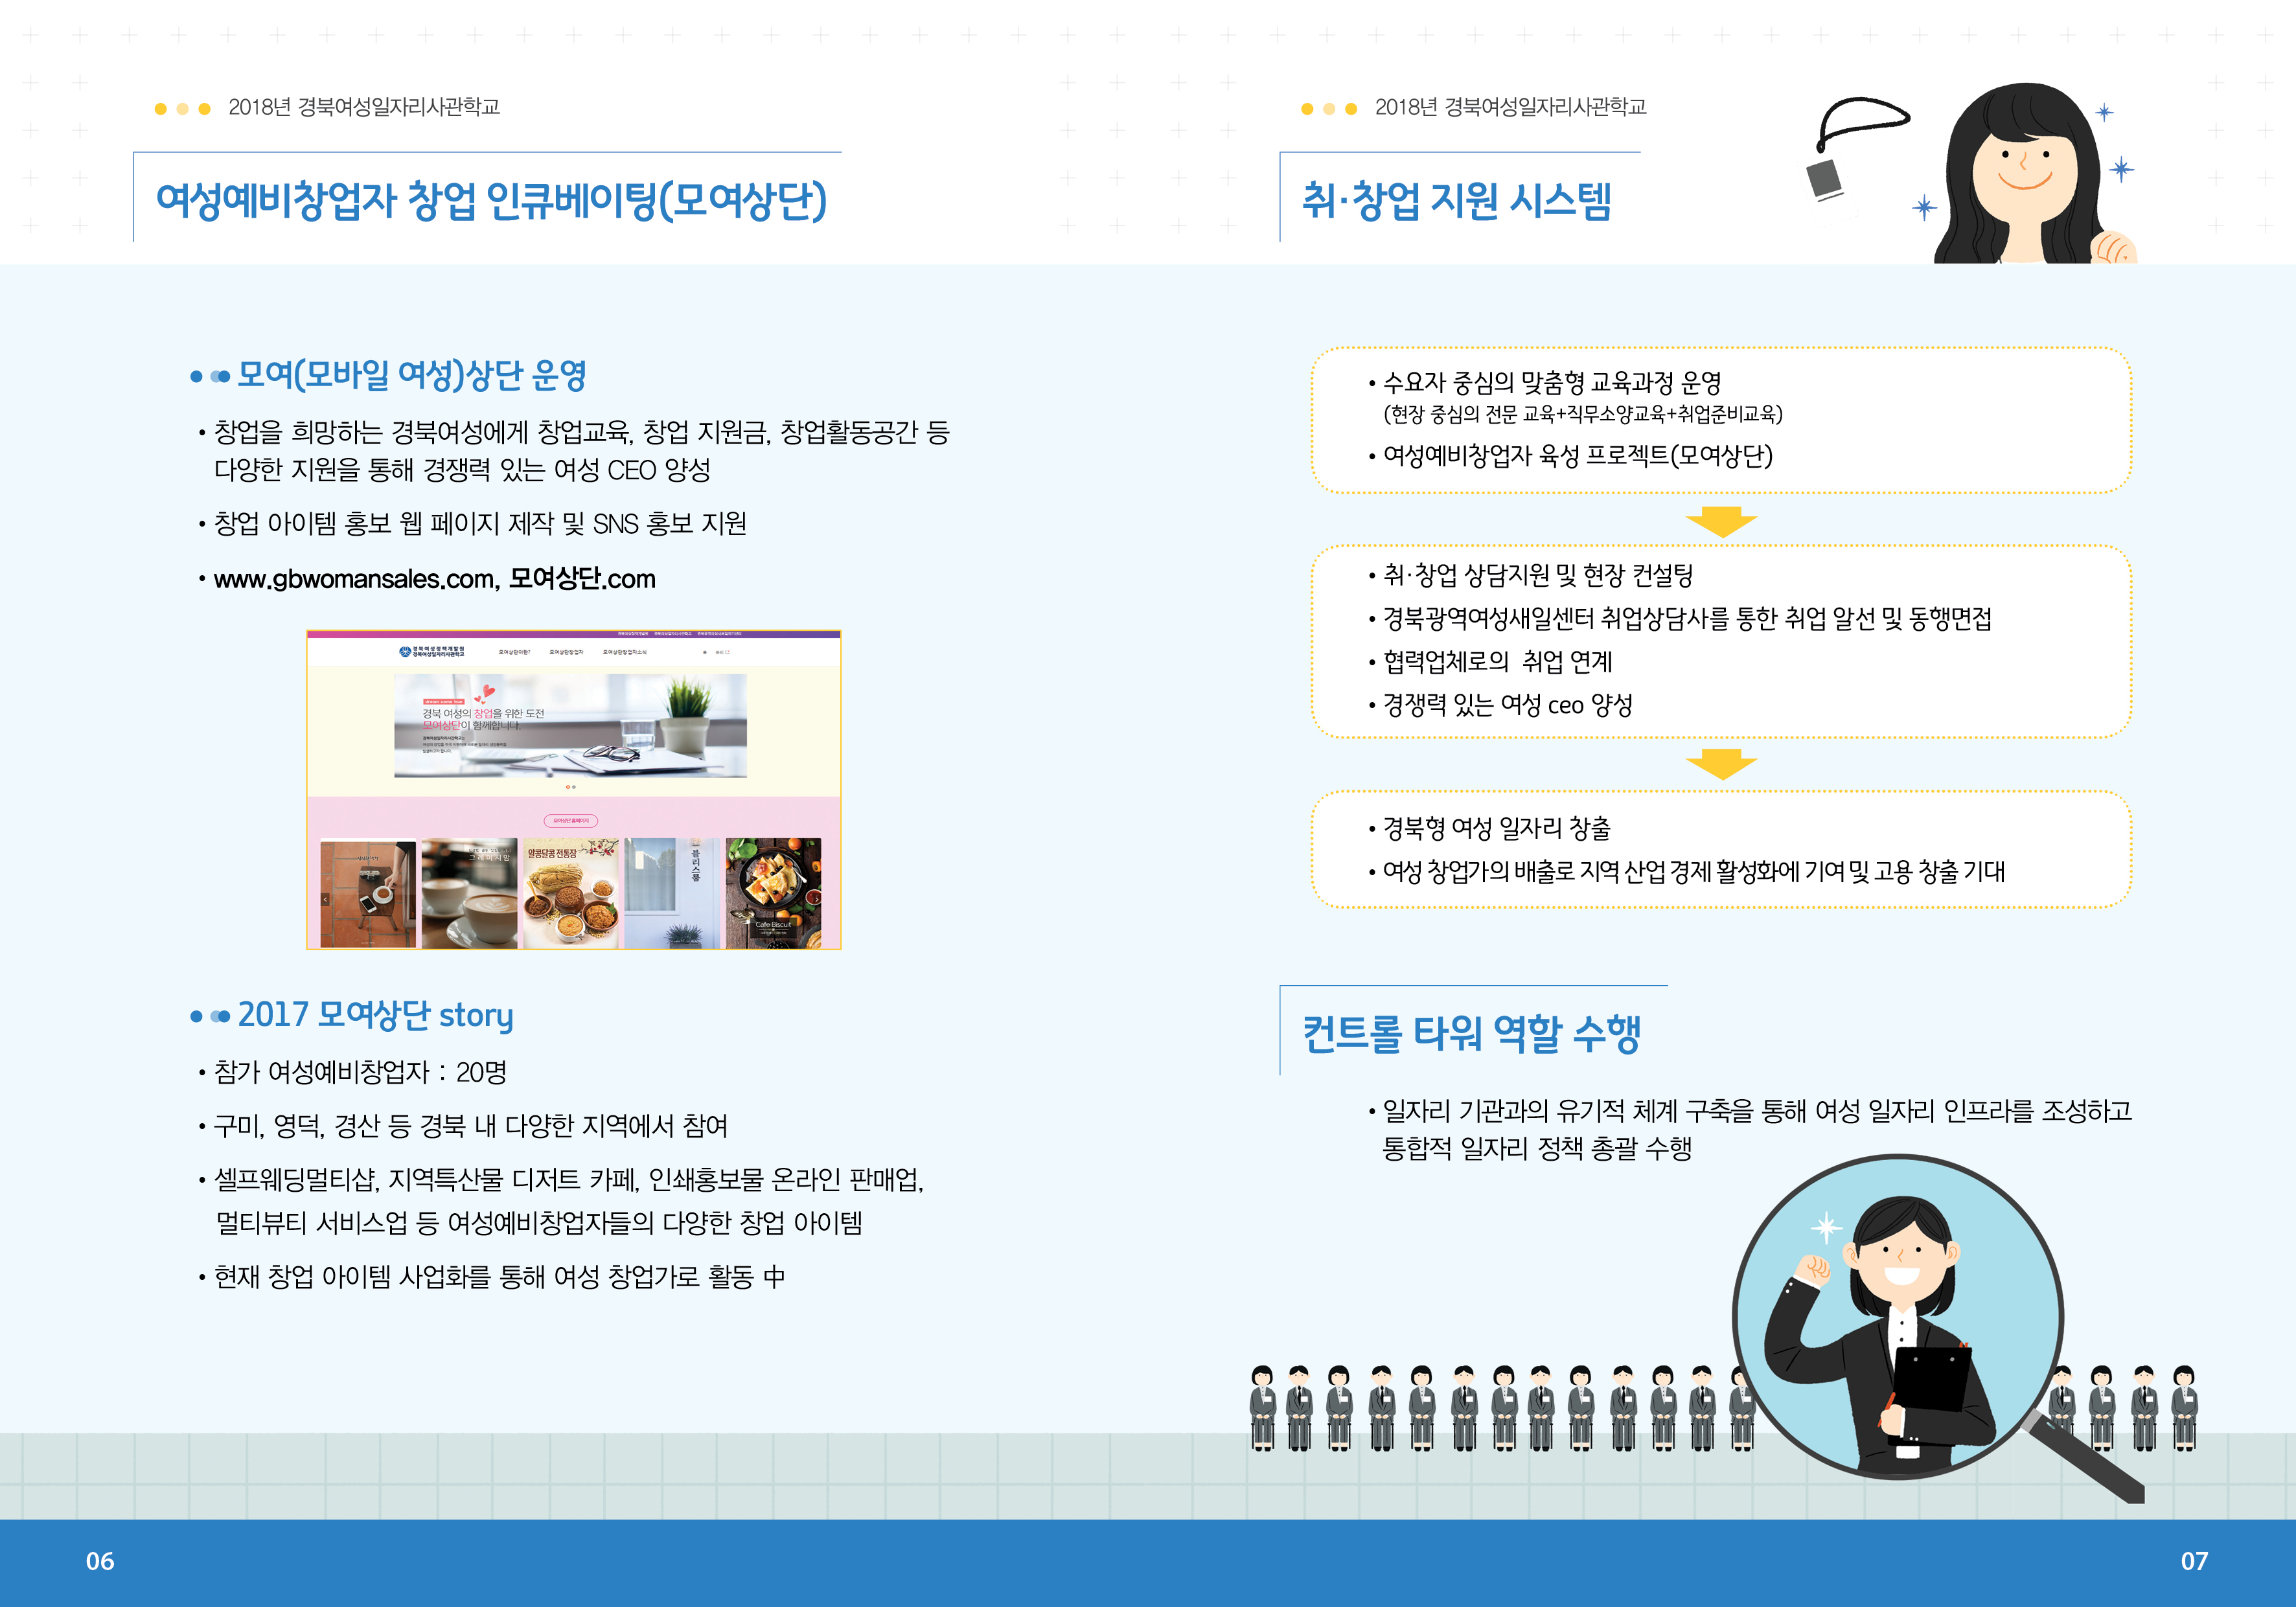 0309_경북여성일자리사관학교 교육프로그램 리플릿 출4.jpg